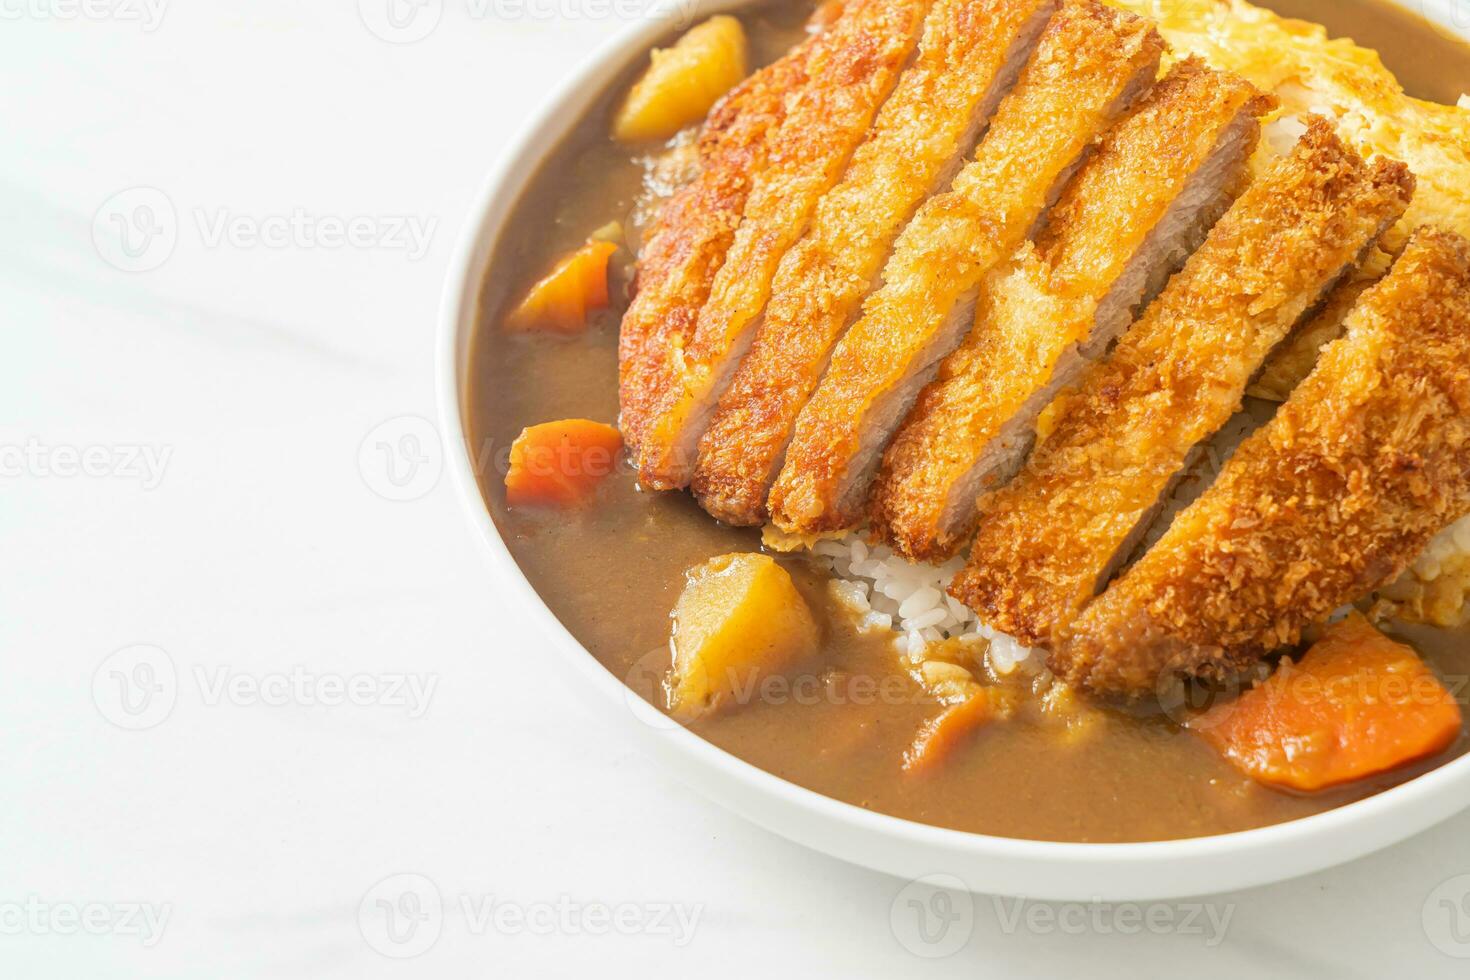 arroz de curry com costeleta de porco frita e omelete cremosa foto